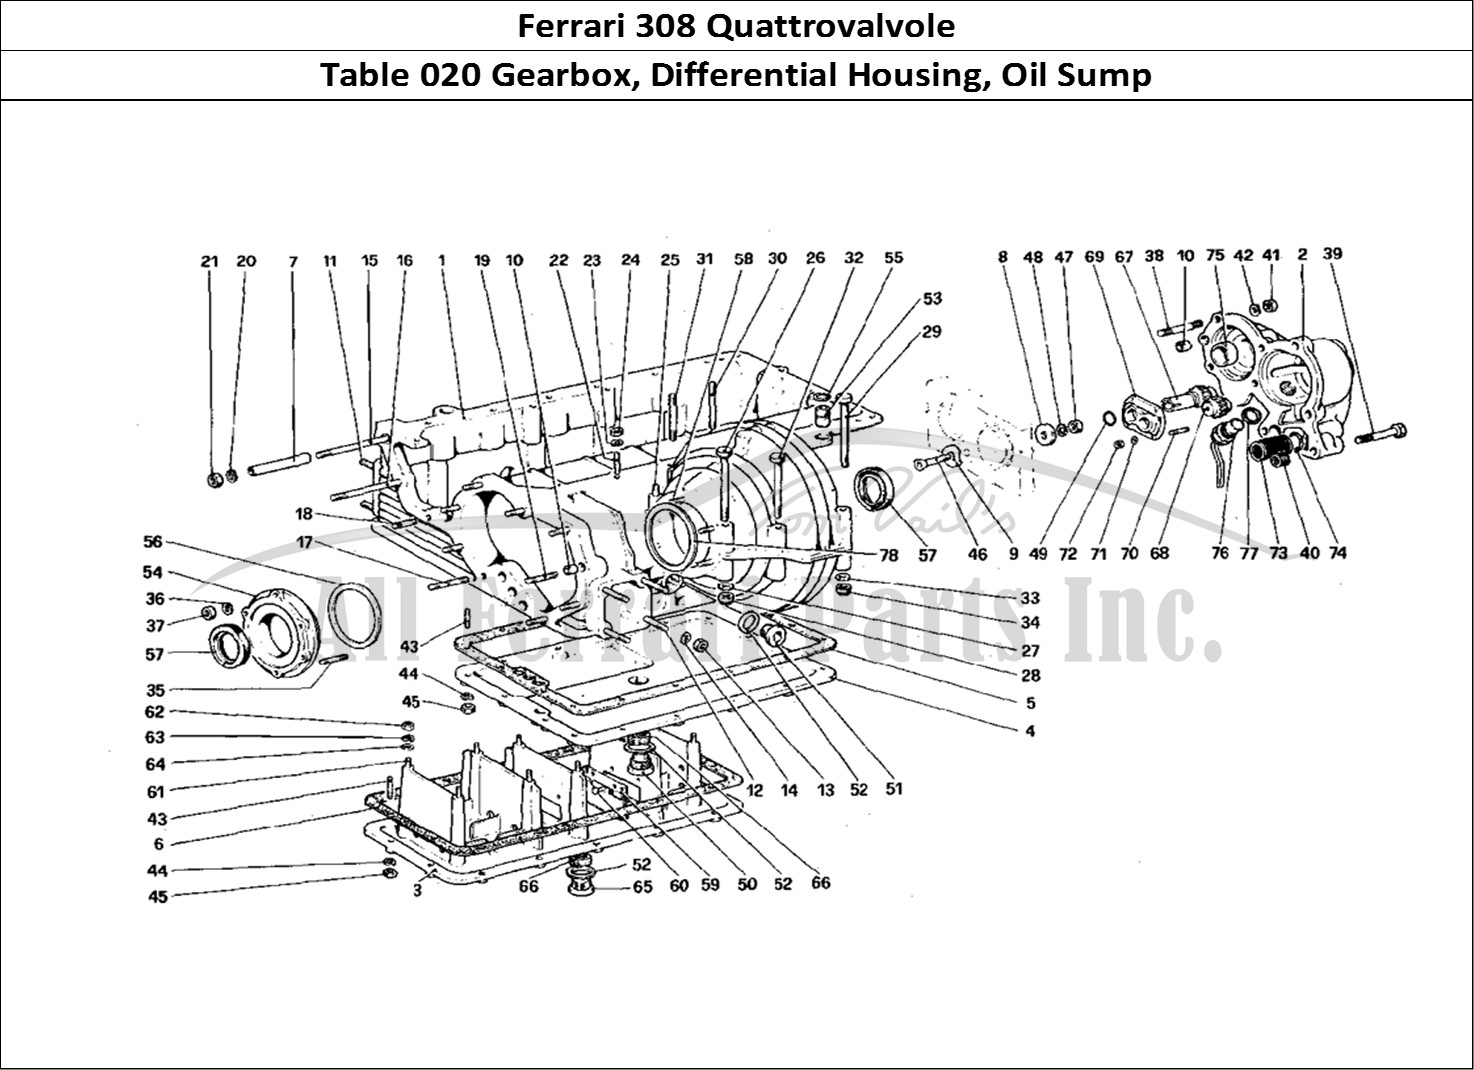 Ferrari Parts Ferrari 308 Quattrovalvole (1985) Page 020 Gearbox - Differential Ho